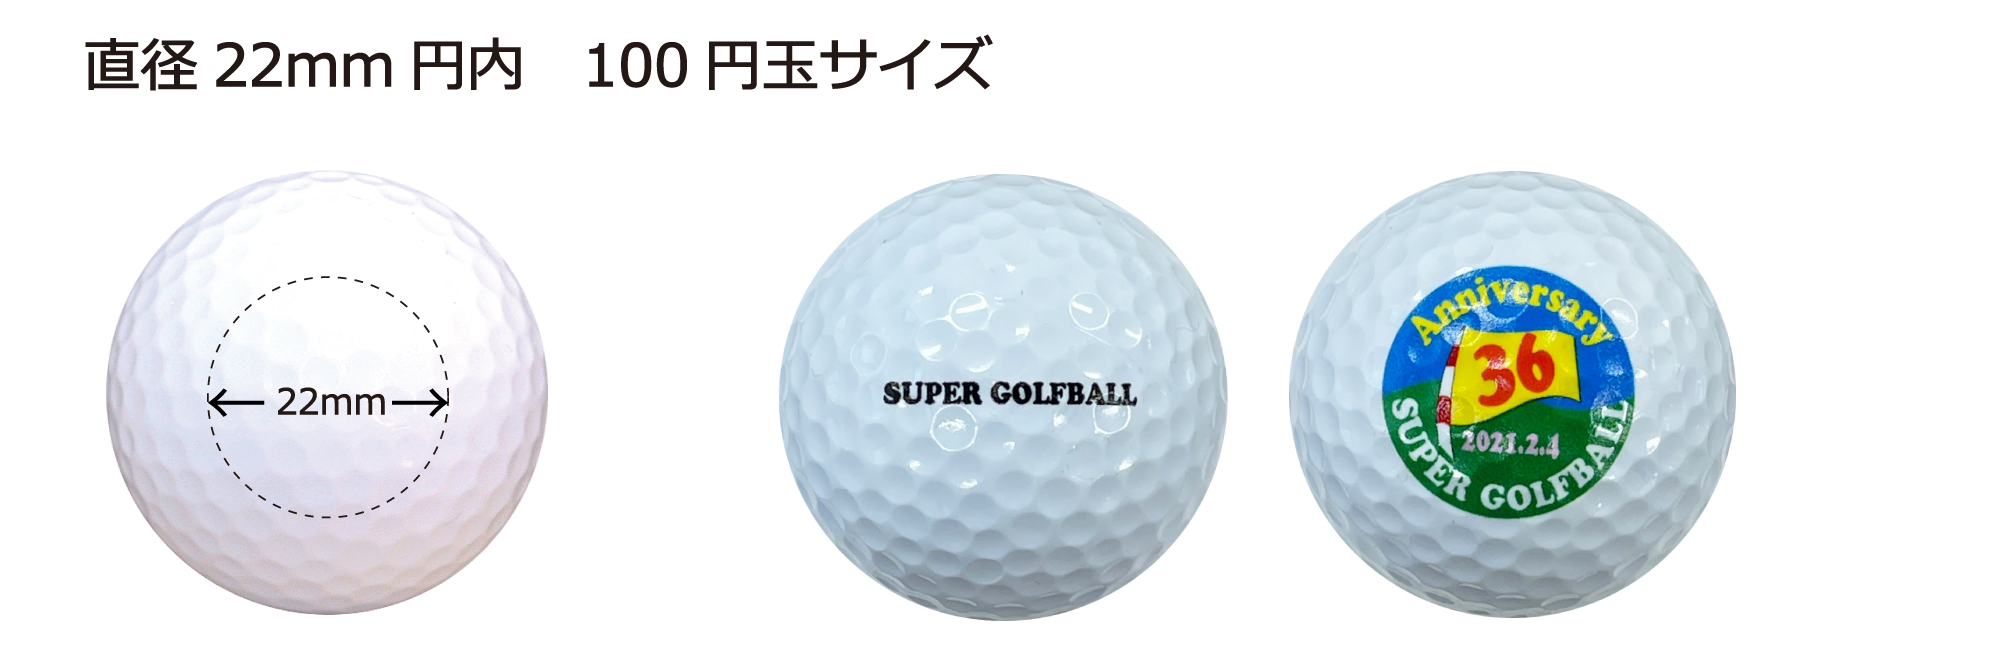 ゴルフボールインクジェット通常プリントサイズ